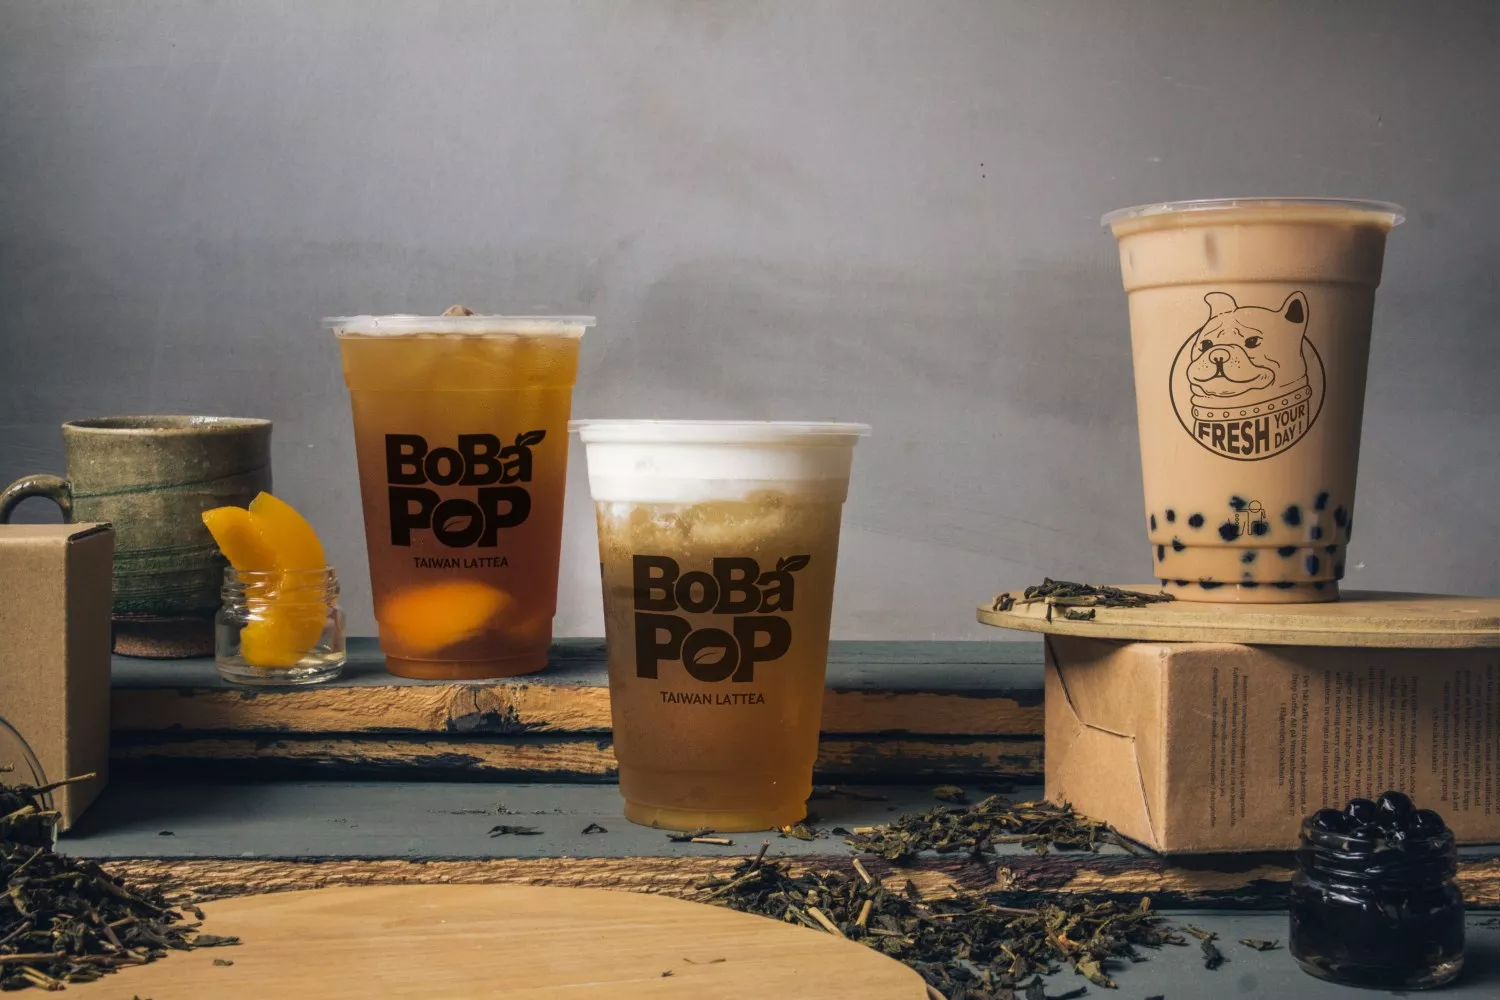 bobapop là thương hiệu trà sữa nổi tiếng từ nước ngoài